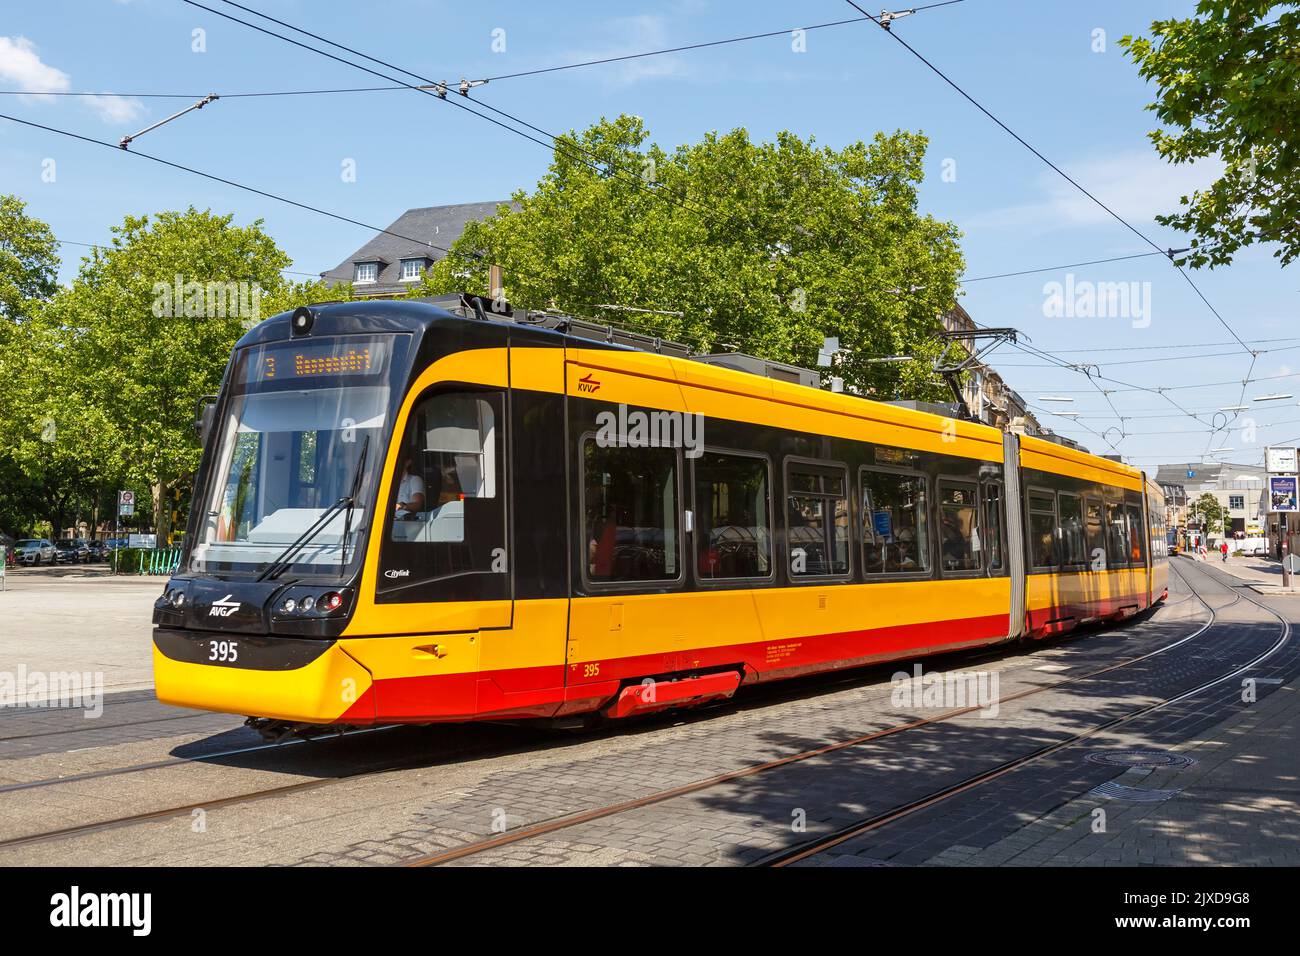 Karlsruhe, Allemagne - 30 juin 2022: Train léger de type TRAM AVG Stadler CityLink transport en commun à l'arrêt de la gare principale de Karlsruhe, Allemagne. Banque D'Images